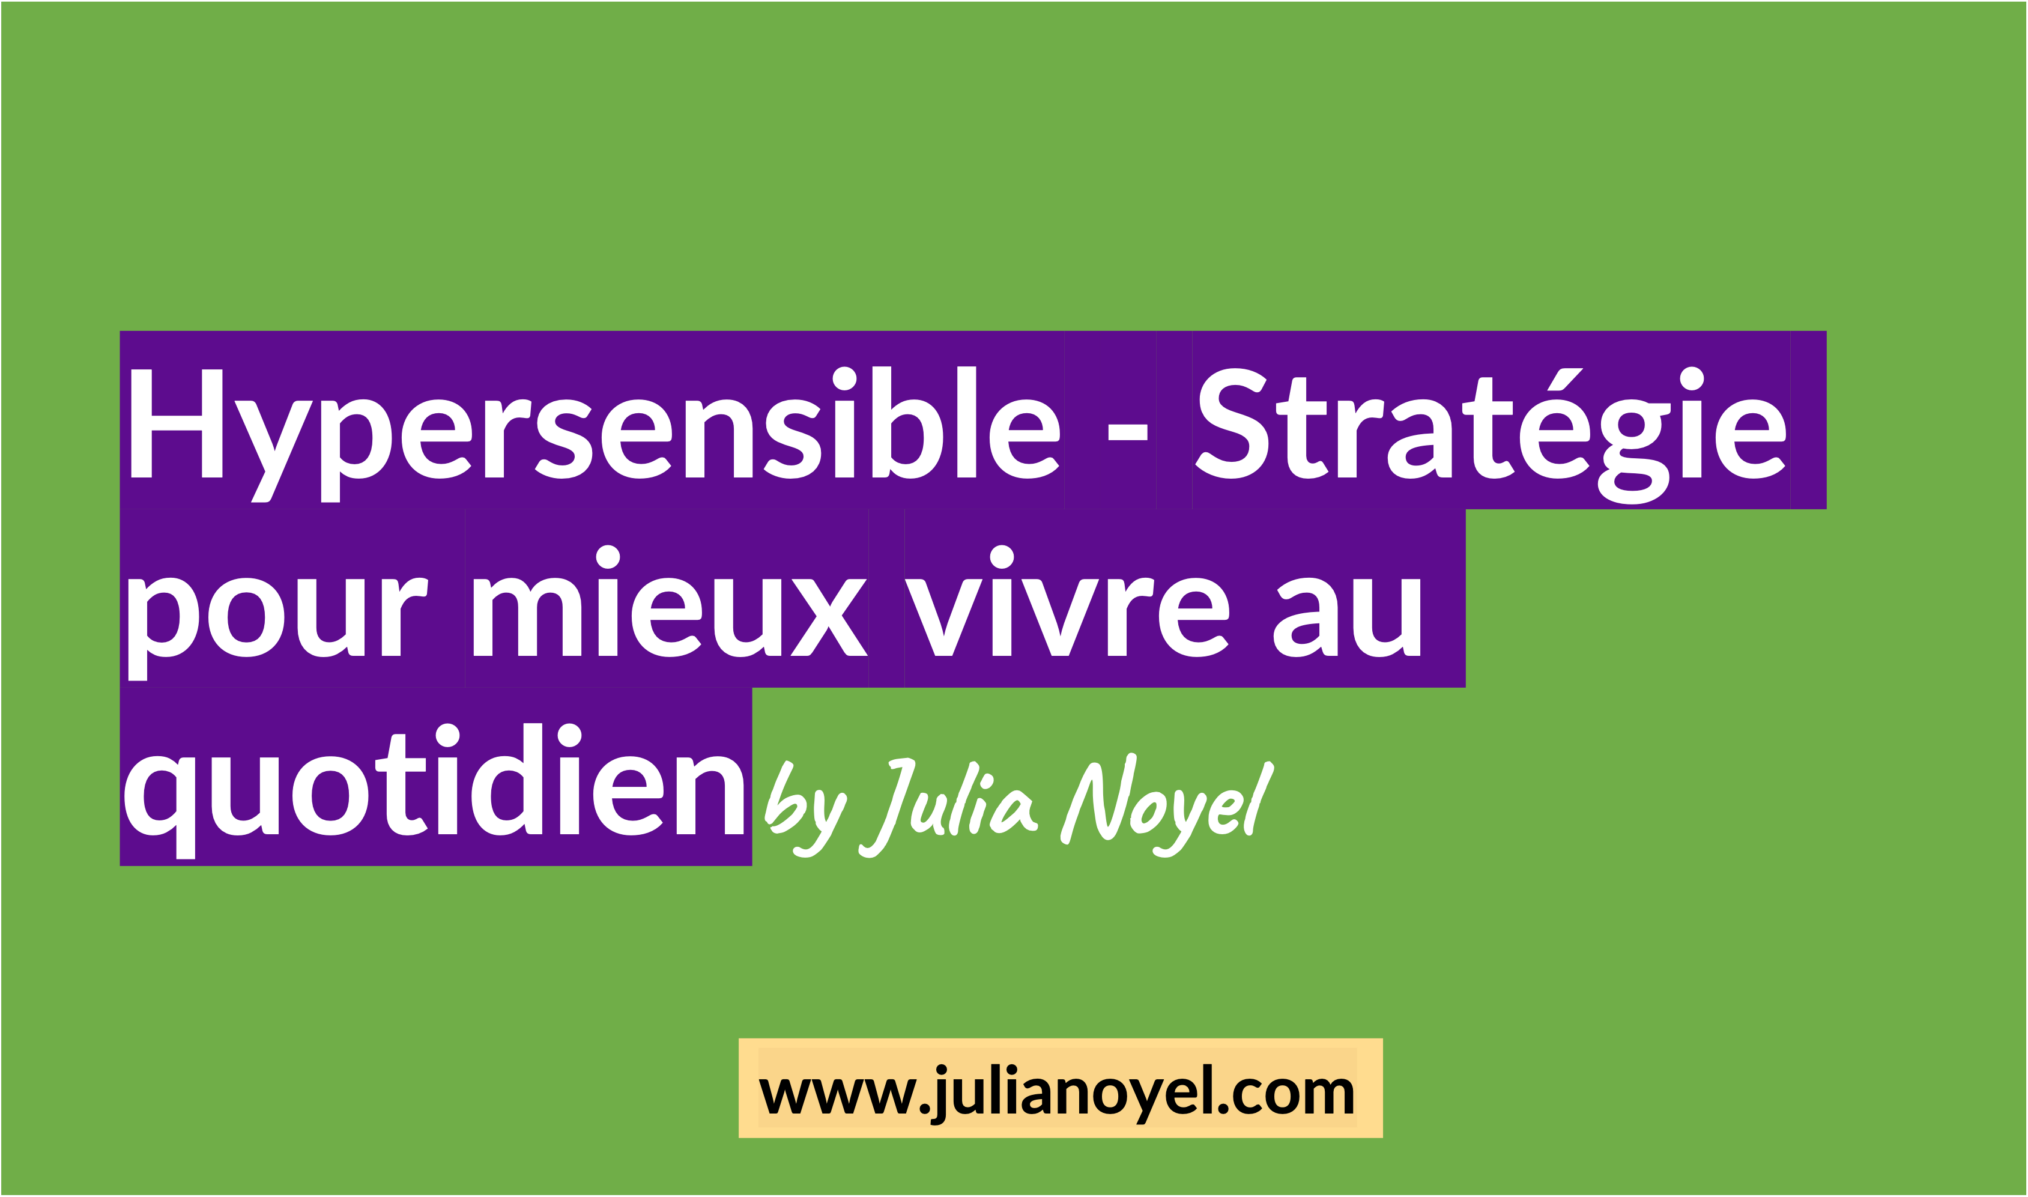 Hypersensible - Stratégie pour mieux vivre au quotidienby Julia Noyel